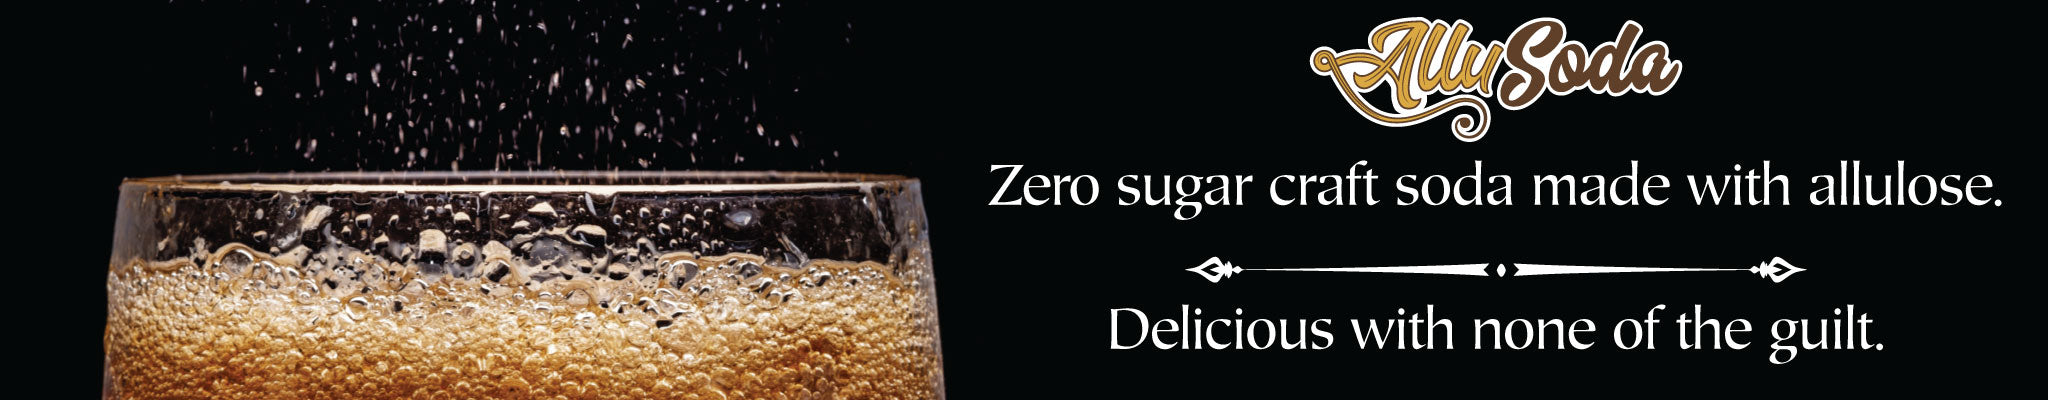 Allusoda zero sugar craft soda made with allulose. Delicious with none of the guilt.